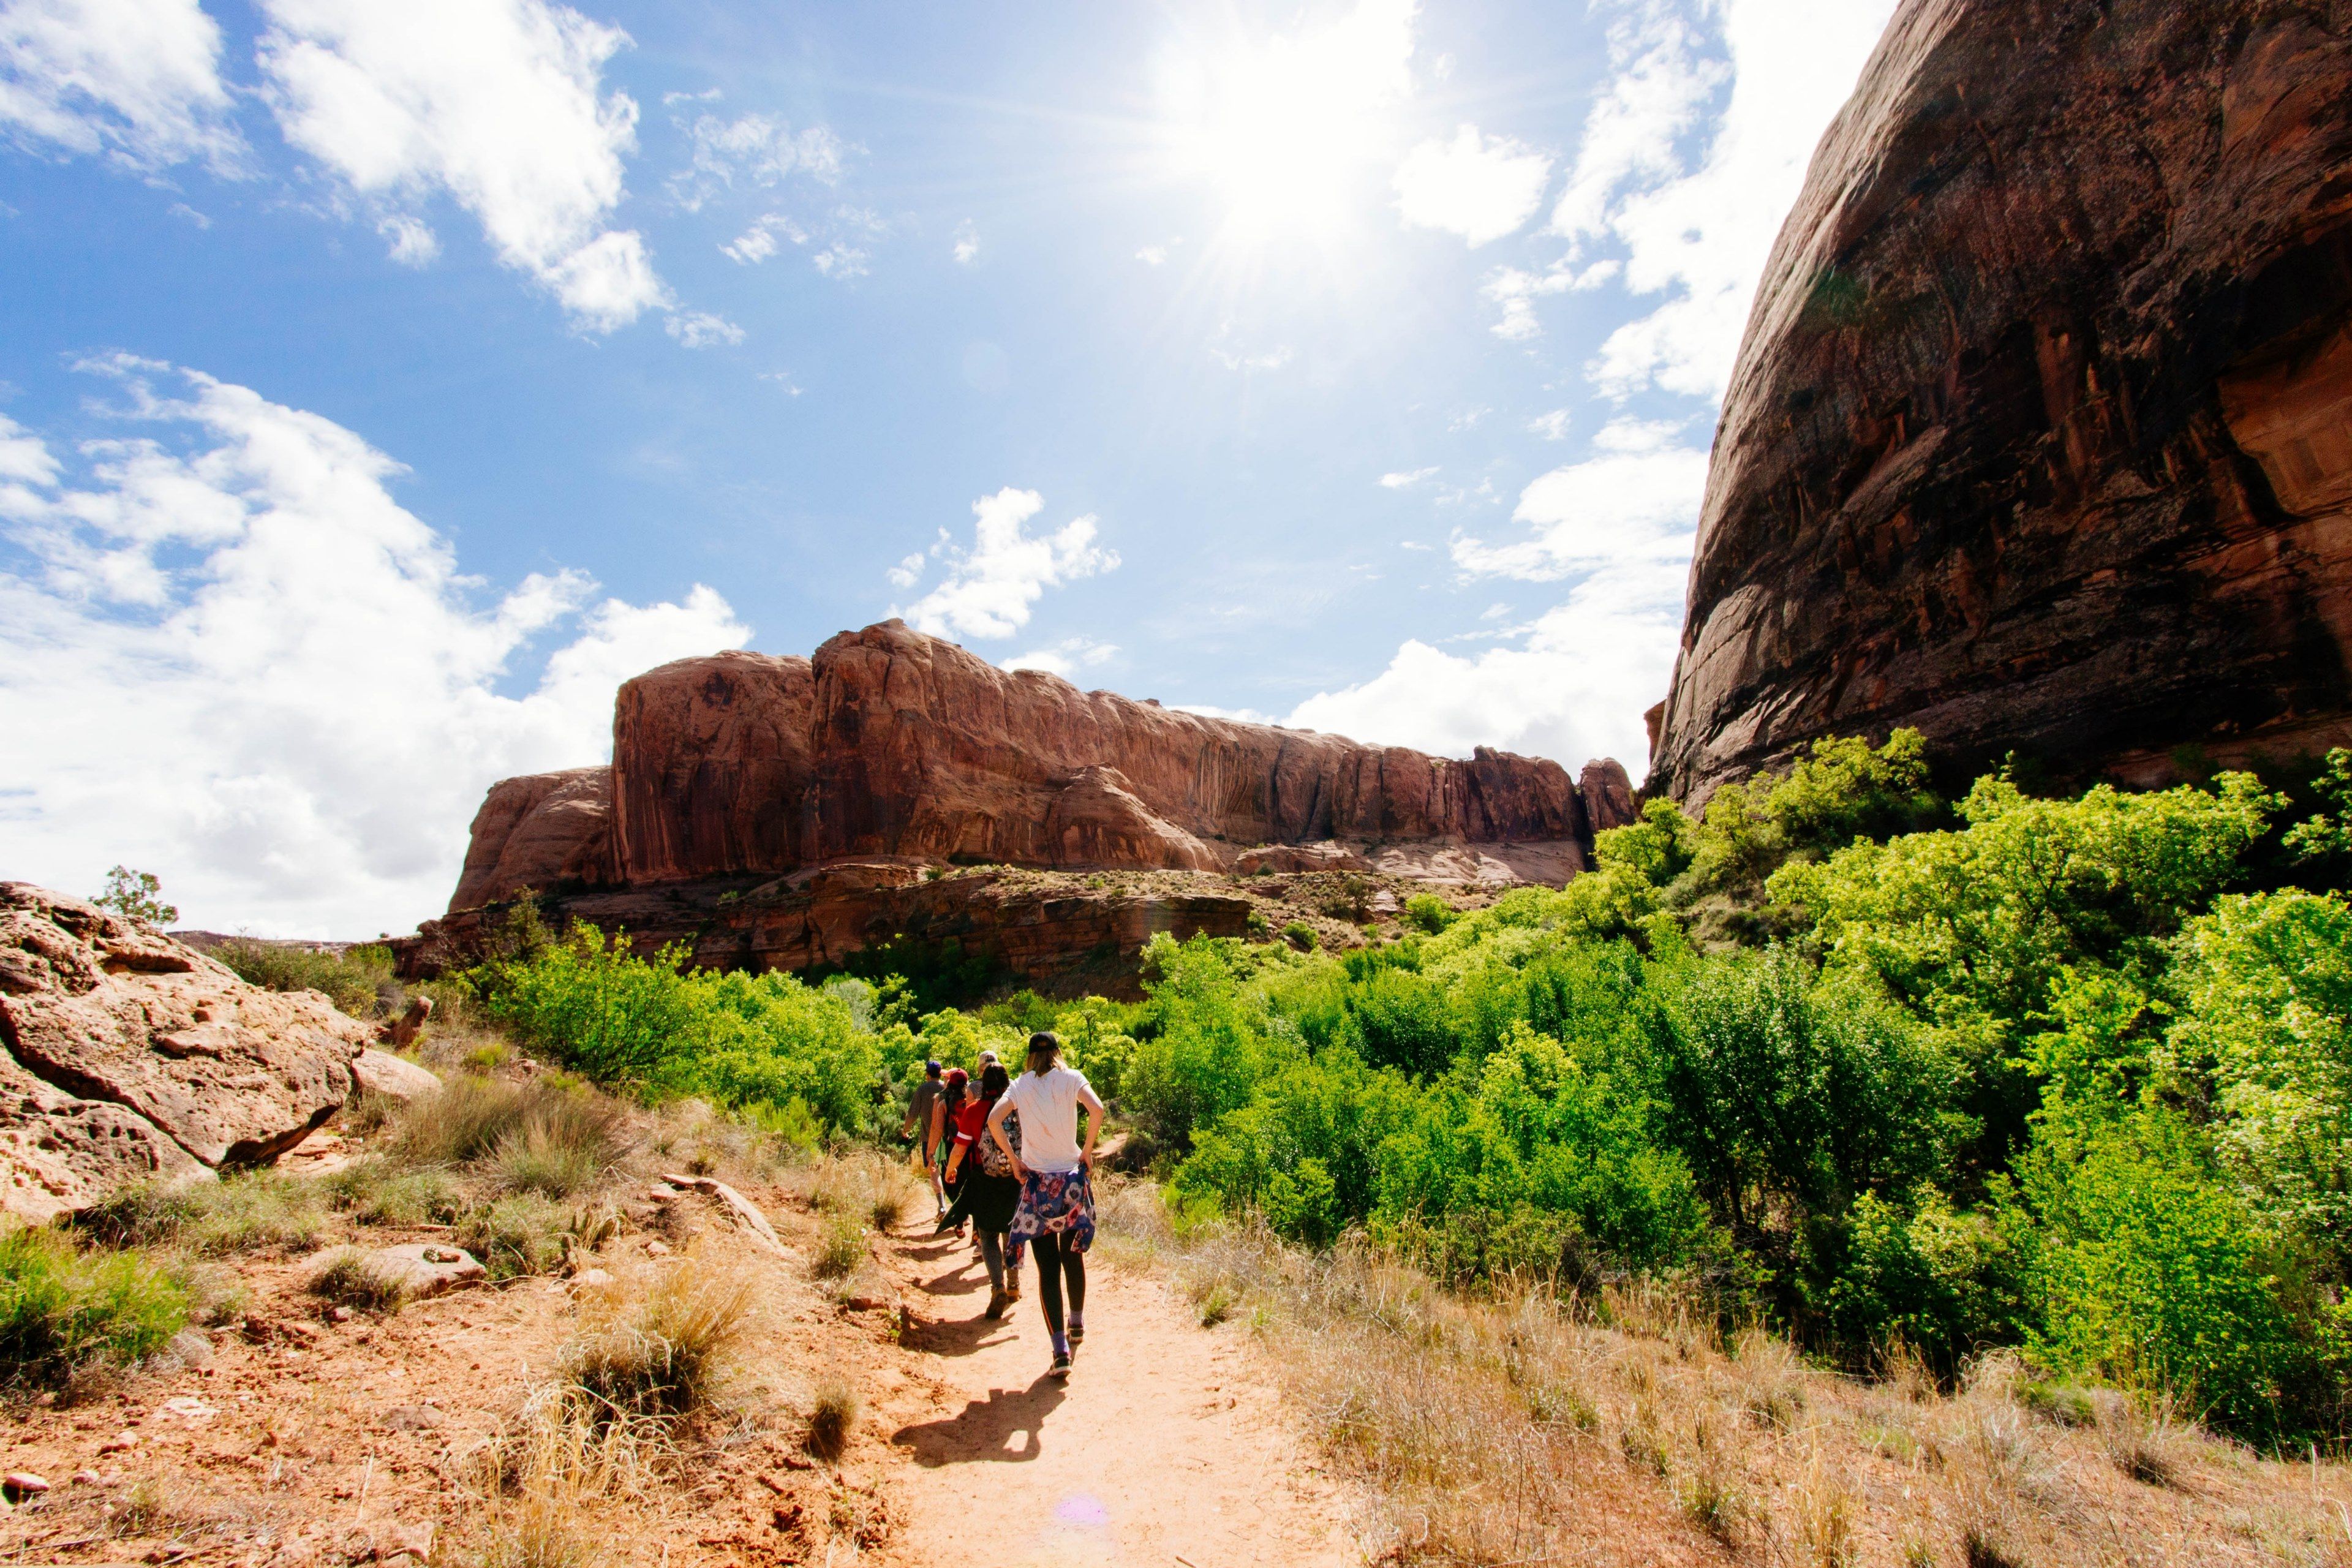 Wallpaper / hikers walk along a desert path toward a rocky mountain ridge, group adventures 4k wallpaper